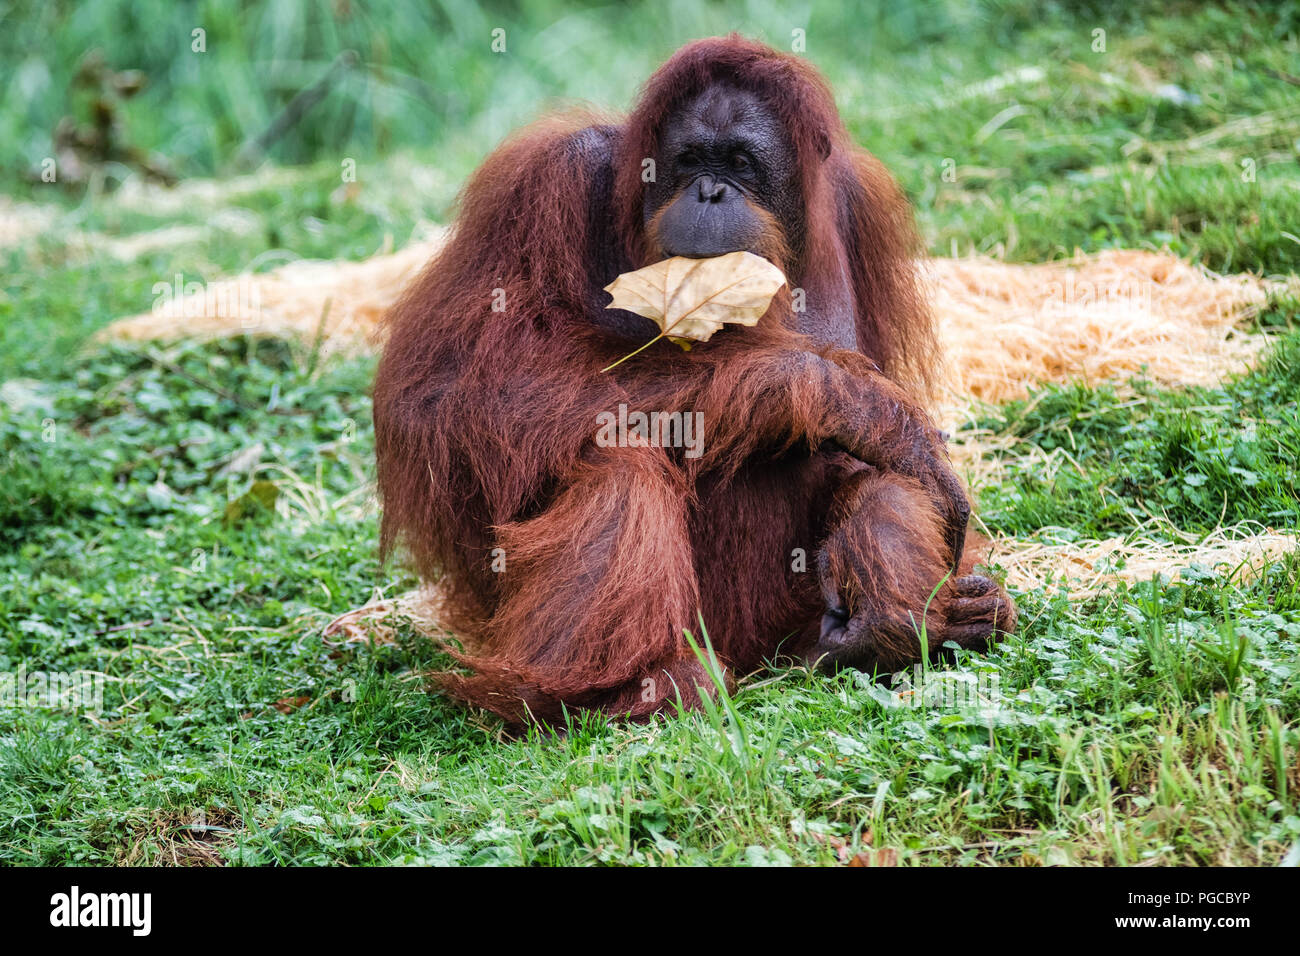 L'orang-outan est le plus gros mammifère arboricole, le seul des grands singes à passer sa vie entière dans les arbres. Stock Photo